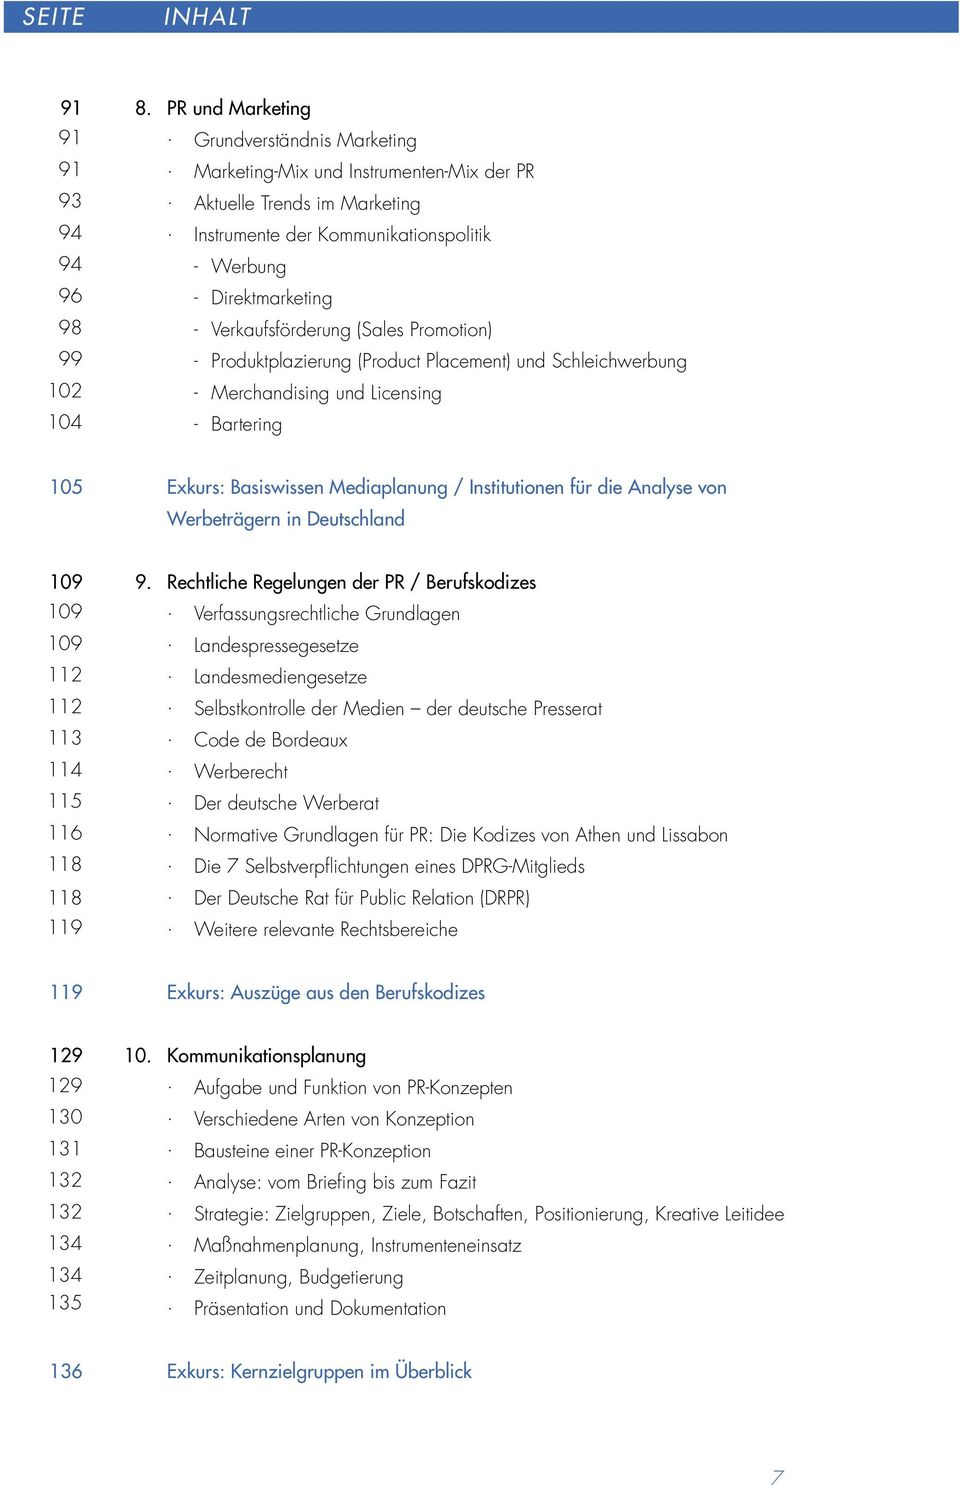 Licensing 104 - Bartering 105 Exkurs: Basiswissen Mediaplanung / Institutionen für die Analyse von Werbeträgern in Deutschland 109 9. Rechtliche Regelungen der PR / Berufskodizes 109.